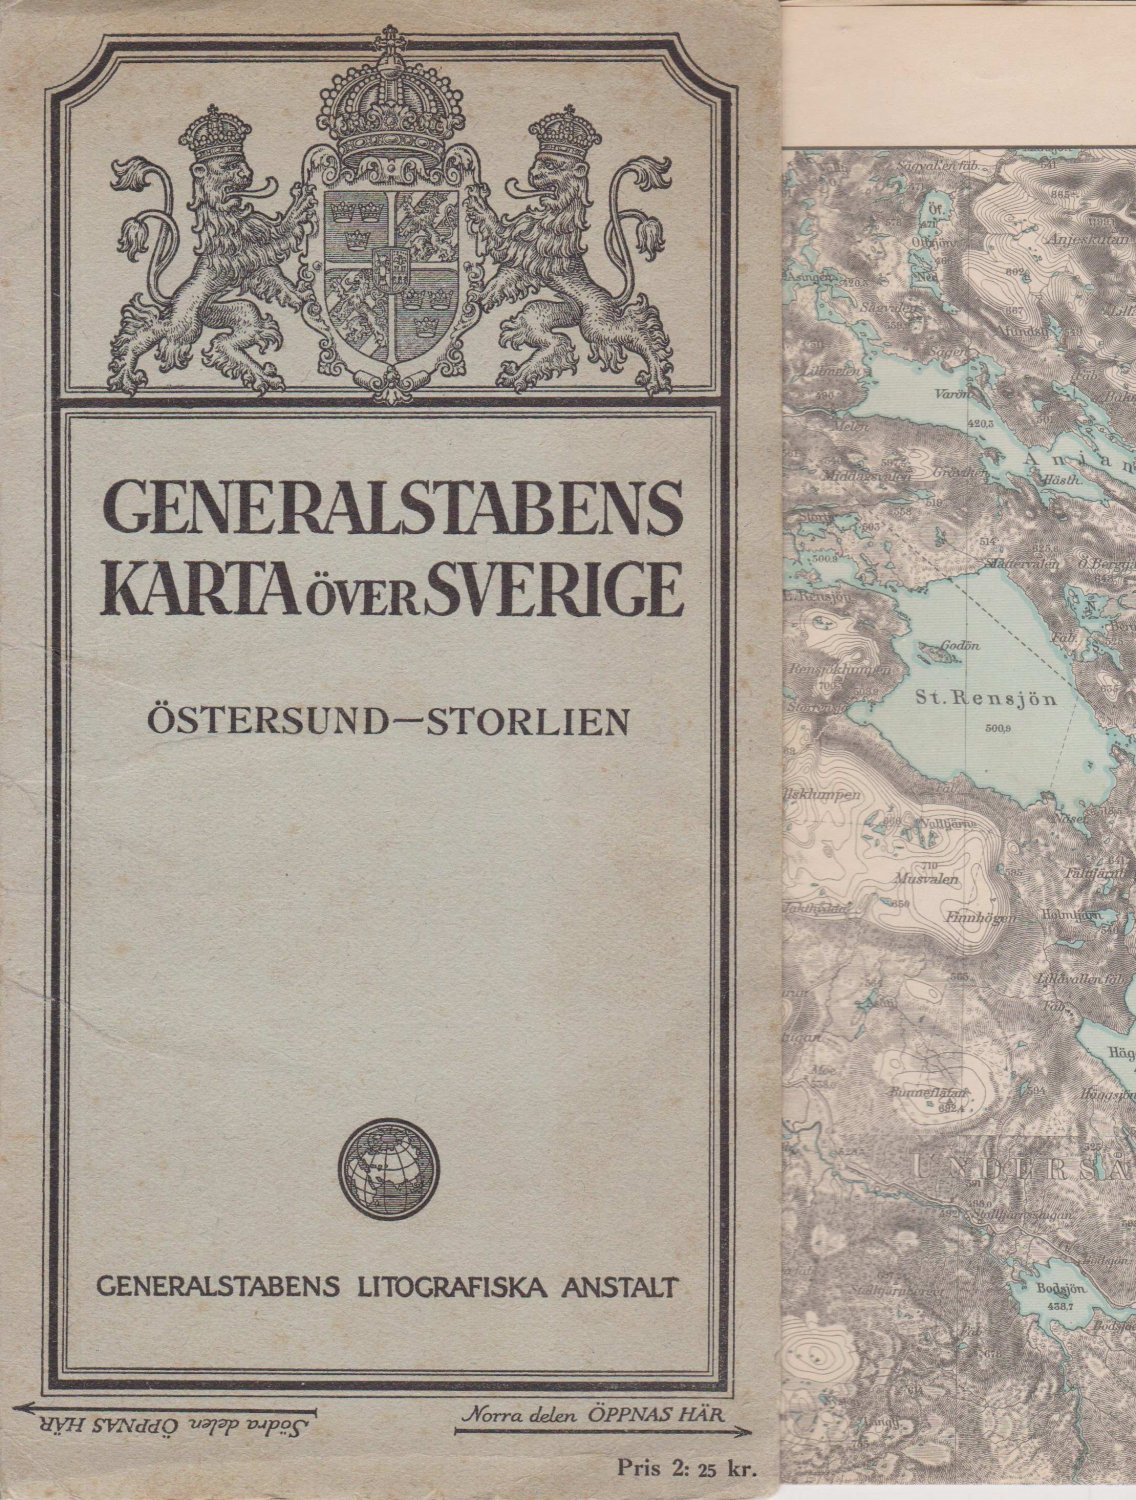 GENERALSTABENS LITOGRAFISKA ANSTALT (Editor):  Generalstabens Karta över Sverige. Östersund-Storlien. 